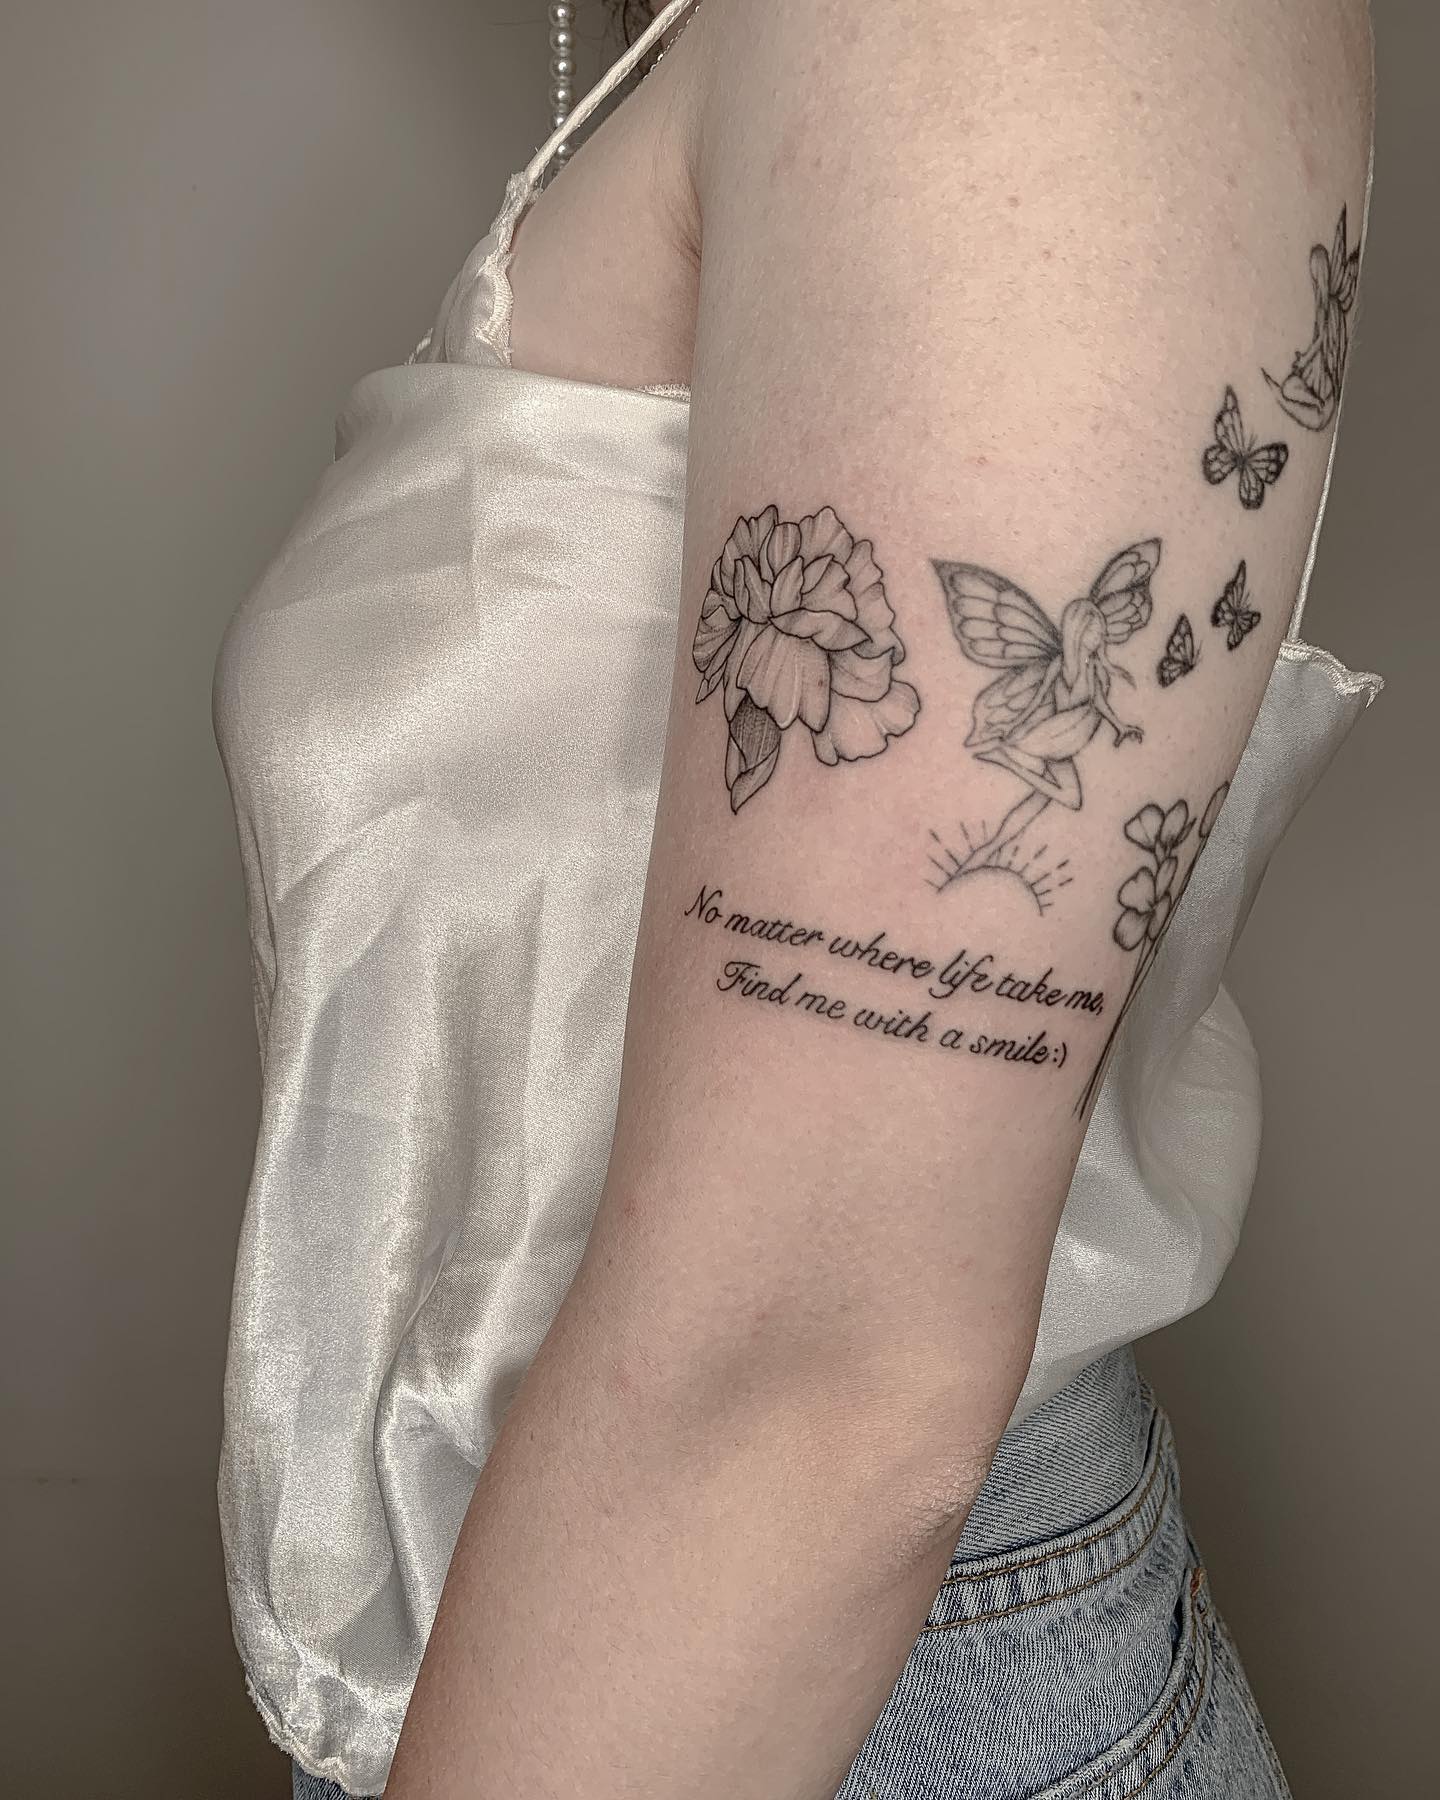 Cita y tatuaje de flor de clavel.